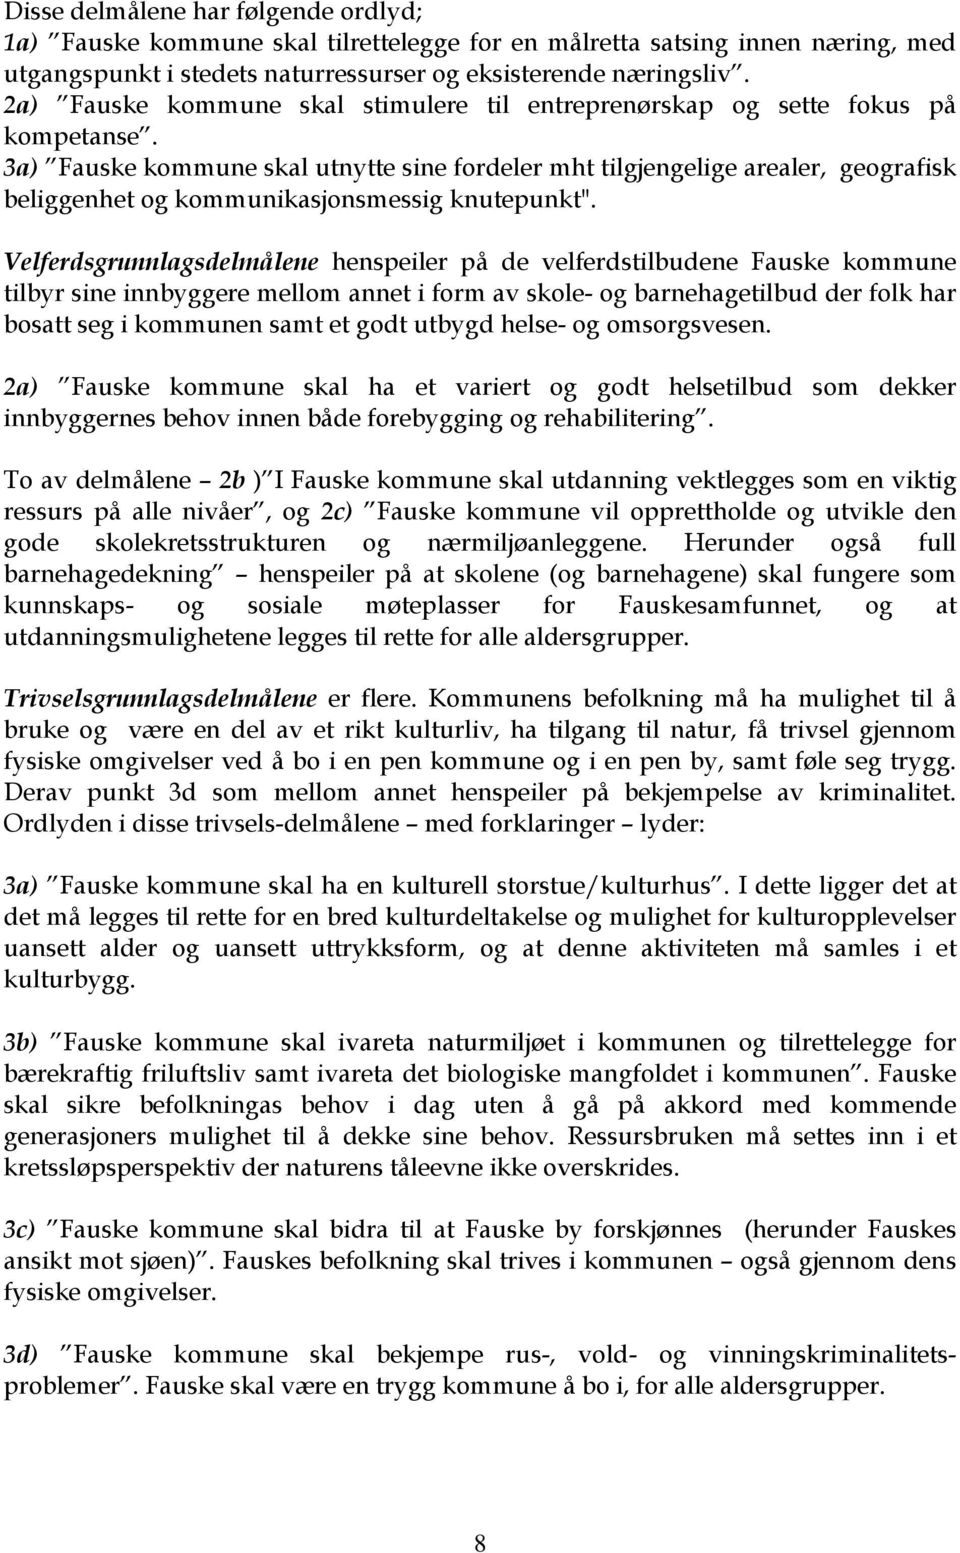 3a) Fauske kommune skal utnytte sine fordeler mht tilgjengelige arealer, geografisk beliggenhet og kommunikasjonsmessig knutepunkt".